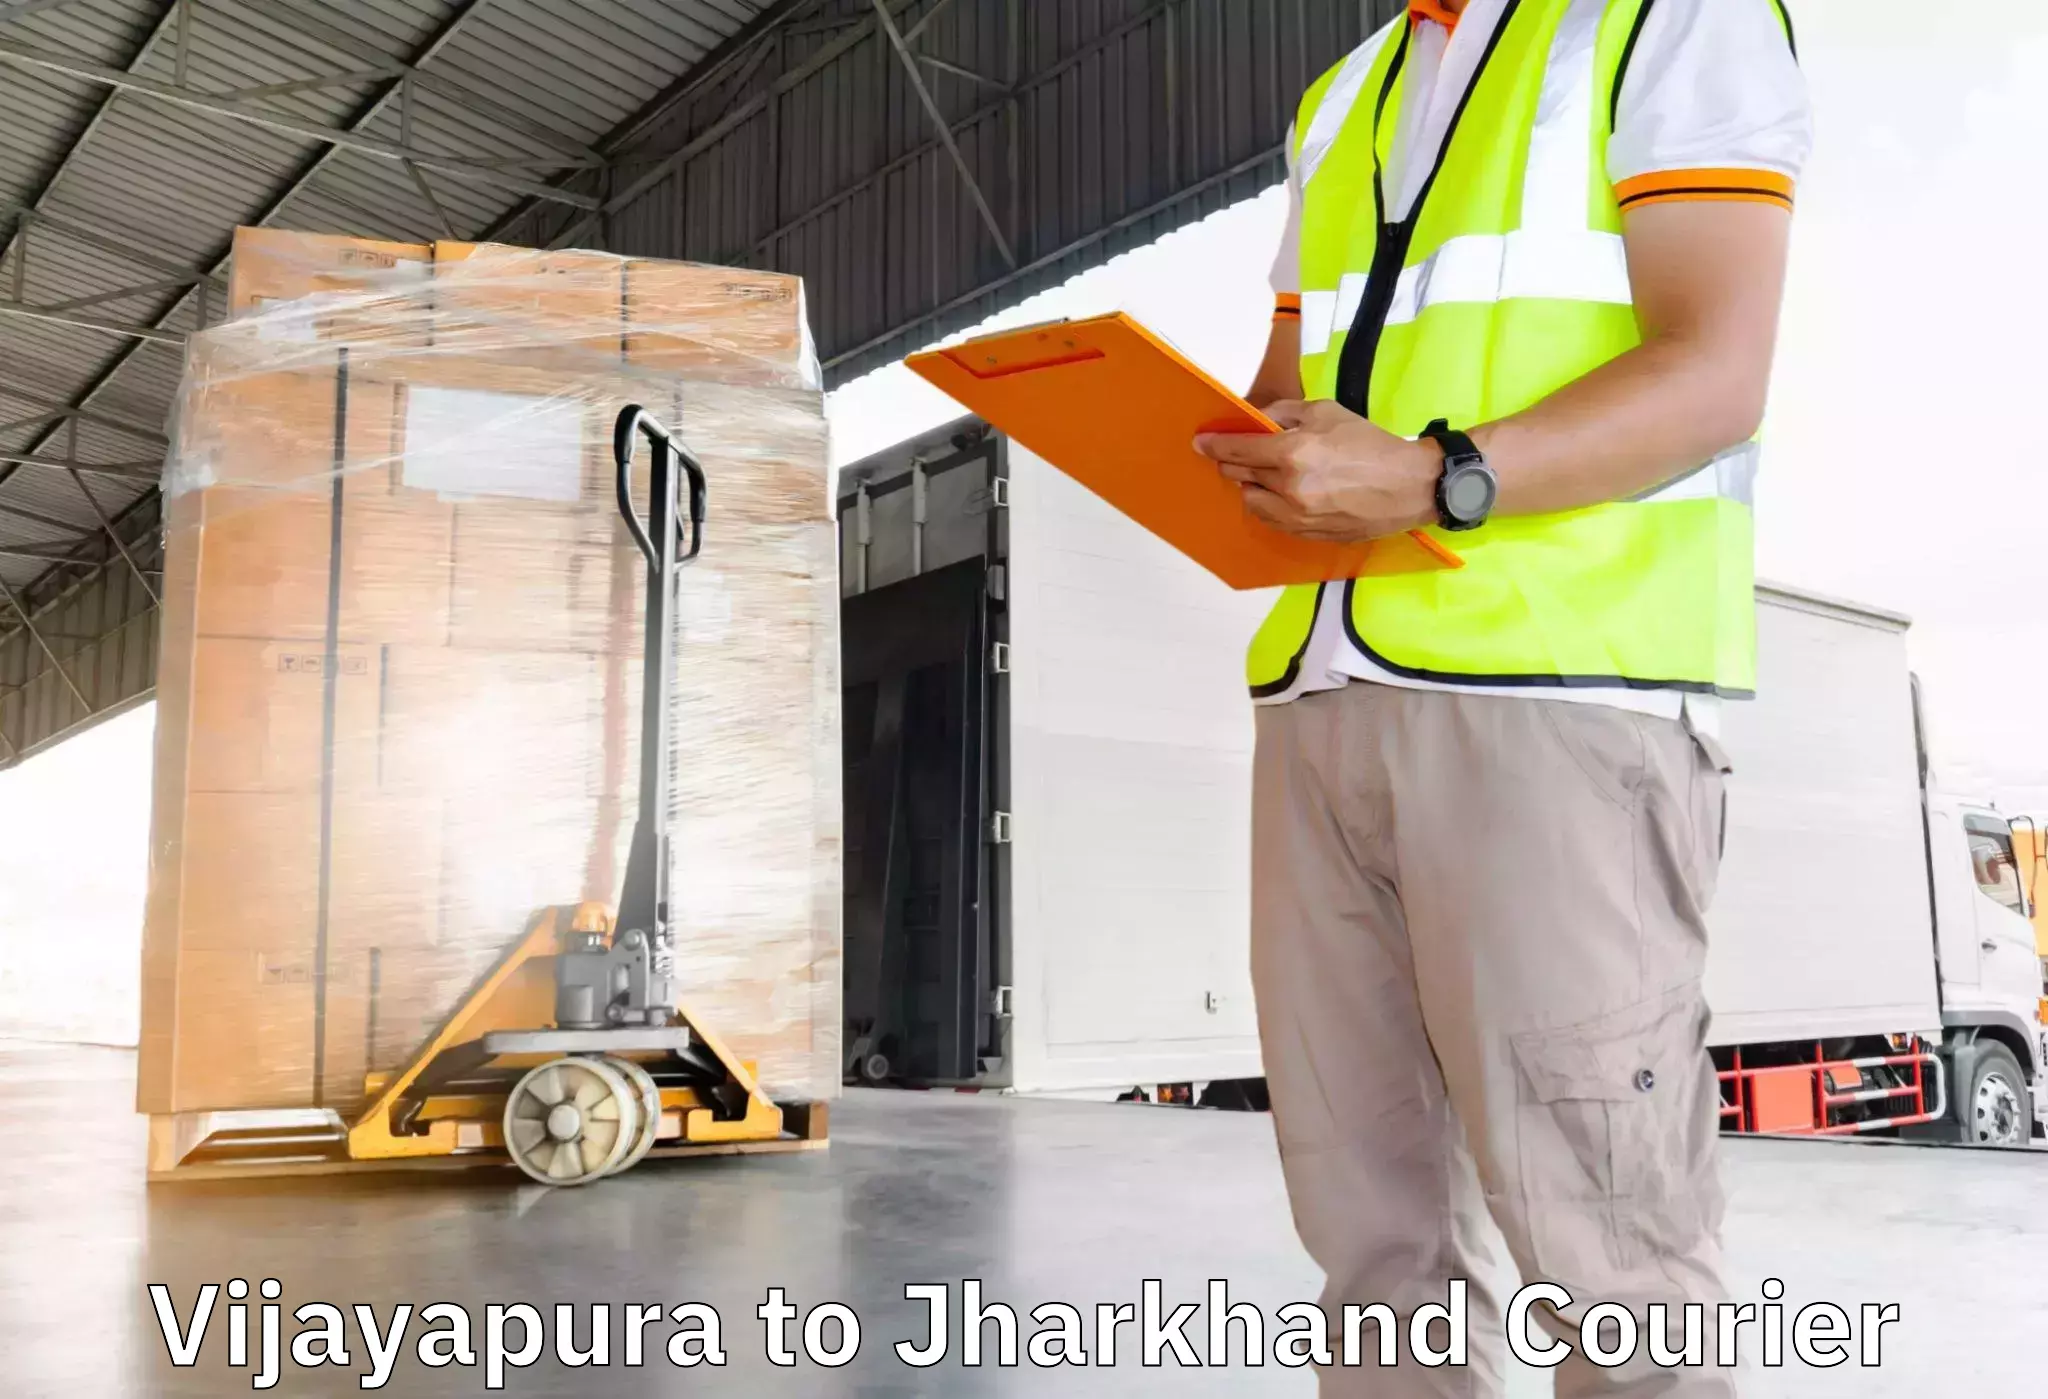 Furniture transport service Vijayapura to Kedla